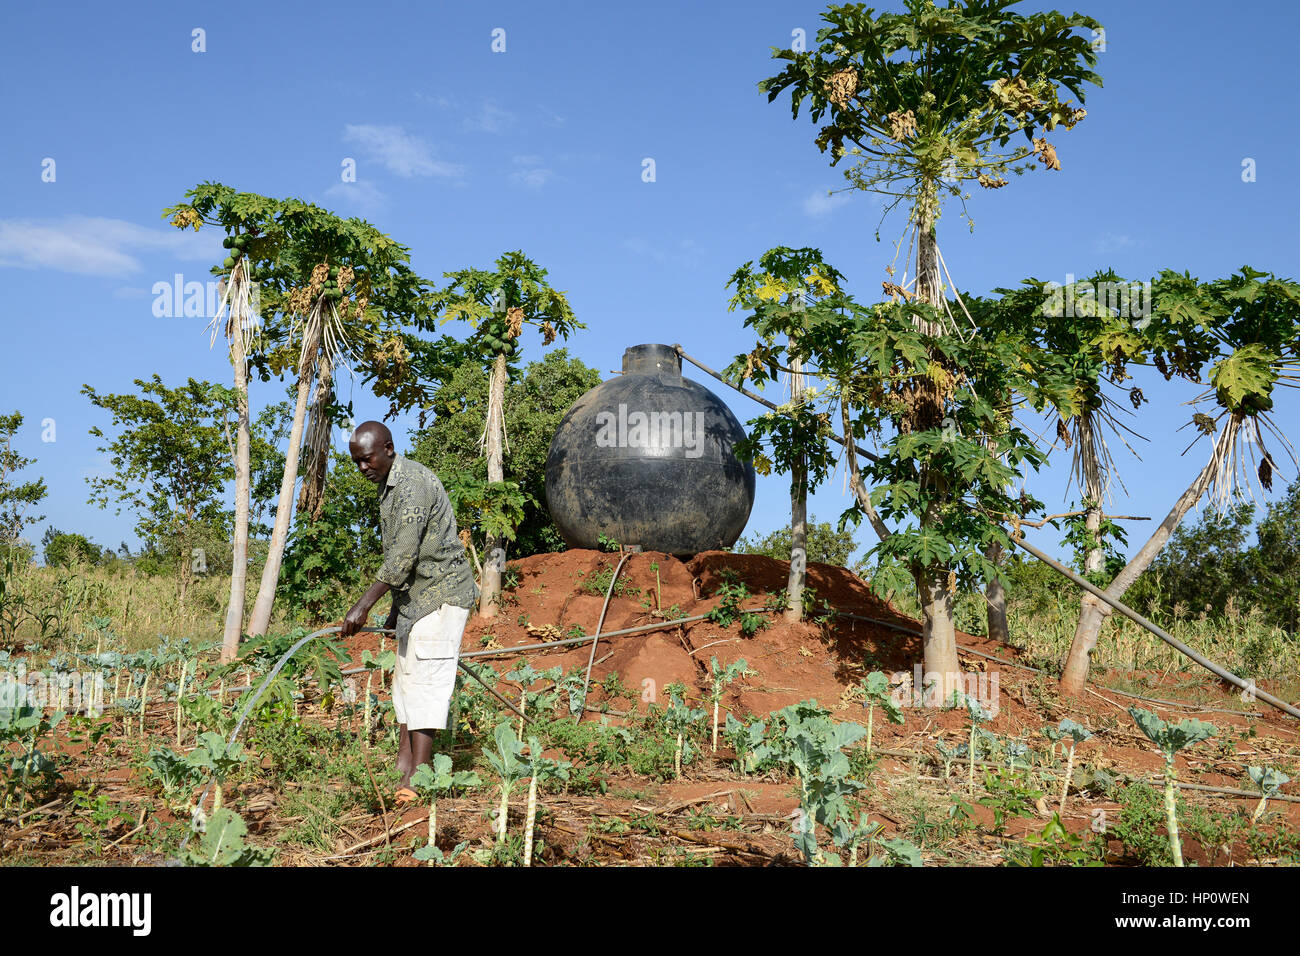 KENYA, Mount Kenya Ost, Region Süd Ngariama, Bauer bewässert Neu gepflanzter Gemüsepflanzen, hinter Kunststoff Wassertank für die Bewässerung Stockfoto